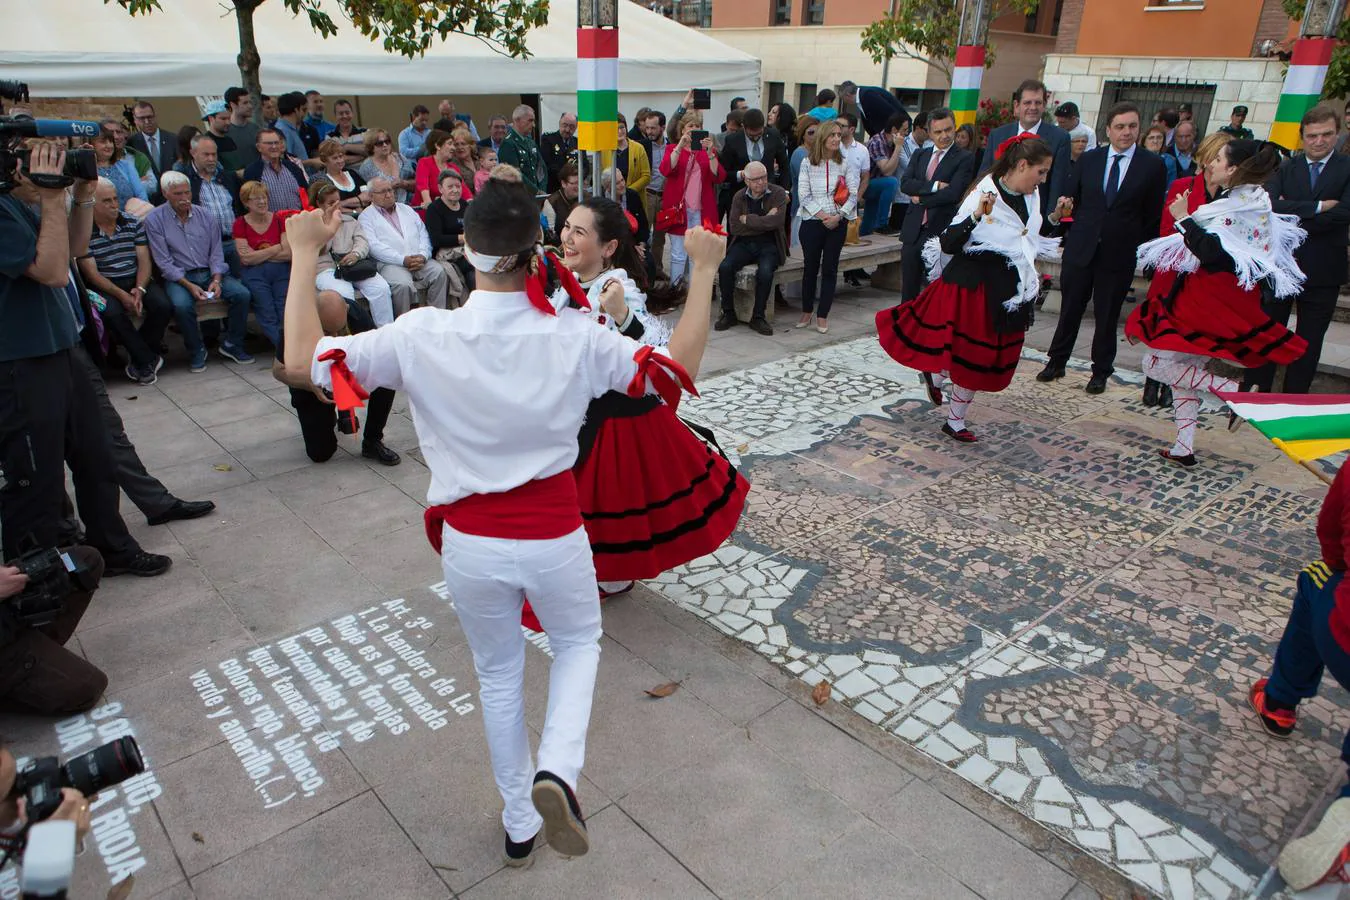 Las imágenes del tradicional acto oficial que da inicio al Día de La Rioja